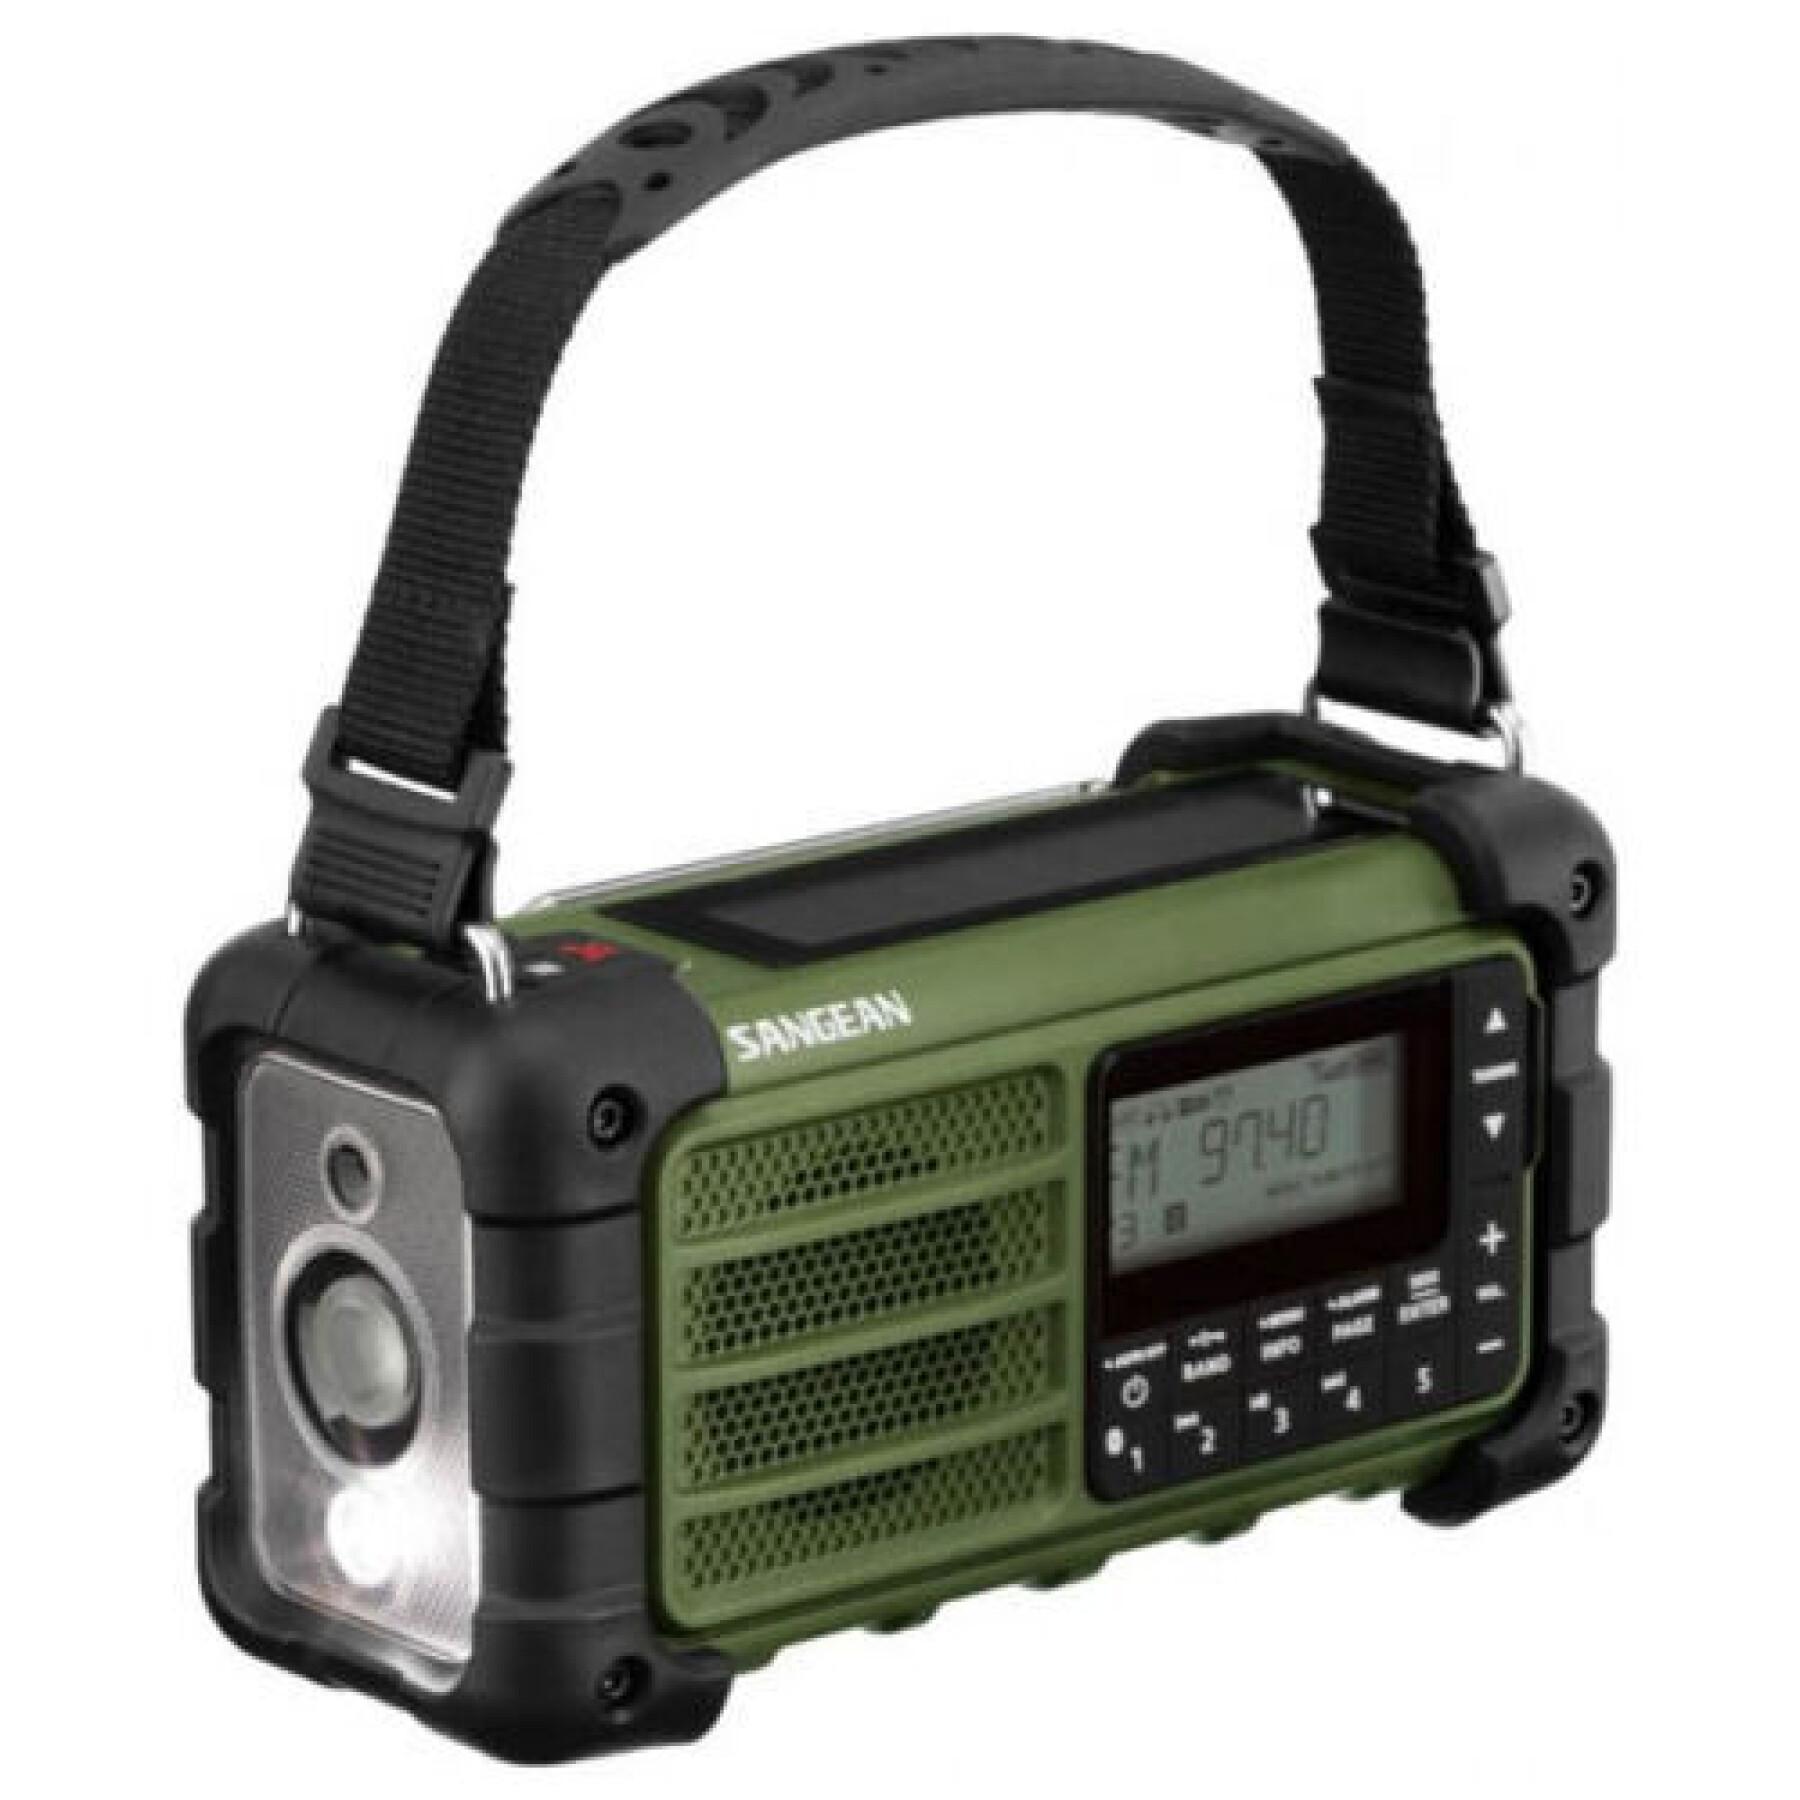 Radio extérieure FM Emergency radio, Bluetooth, panneau solaire, résistant aux éclaboussures et à la poussière, torche Sangean MMR-99